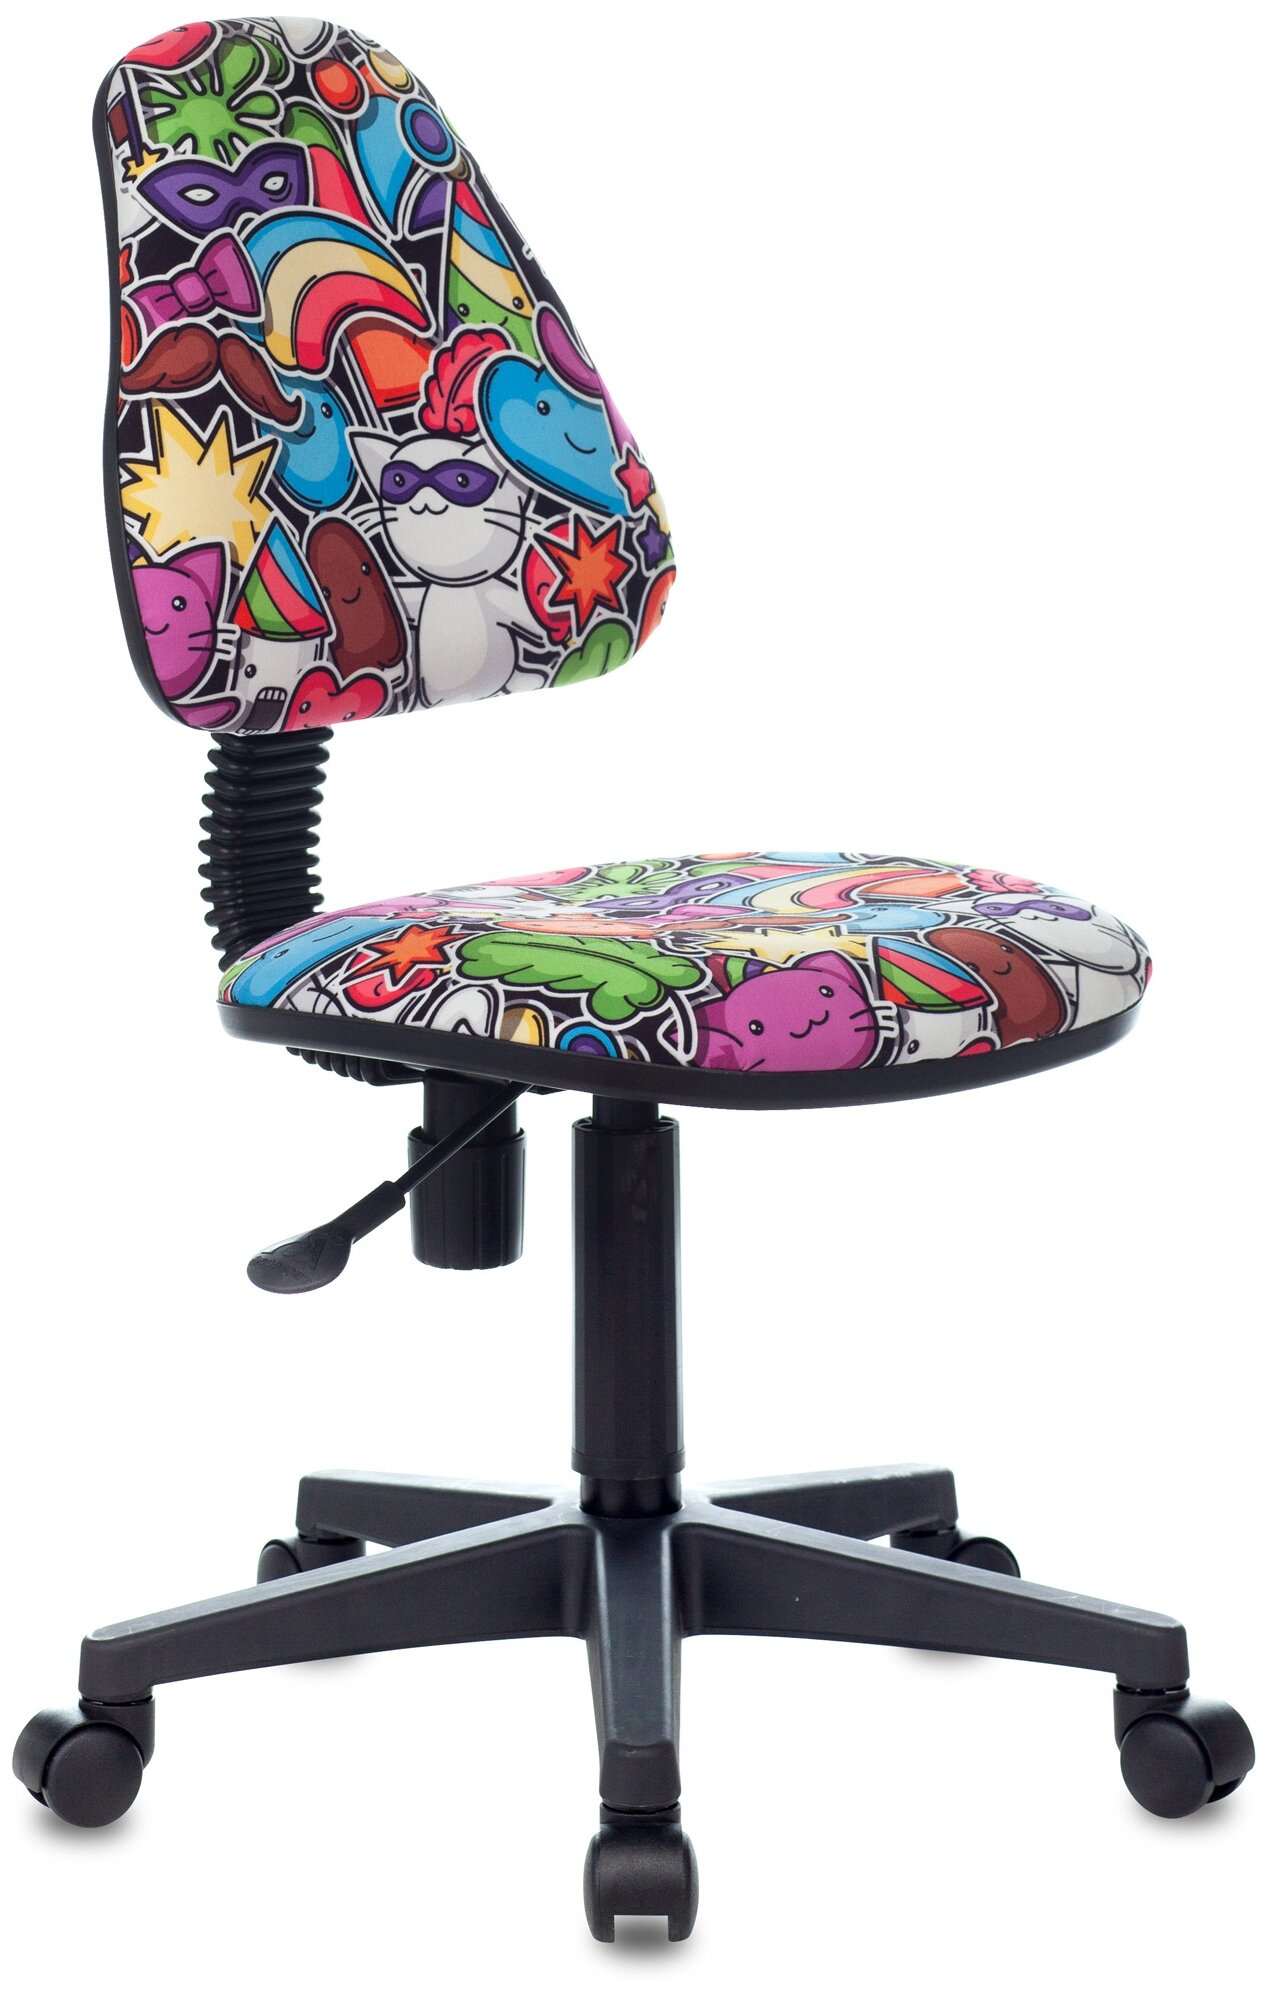 Компьютерное кресло Бюрократ KD-4 детское, обивка: текстиль, цвет: мультиколор маскарад